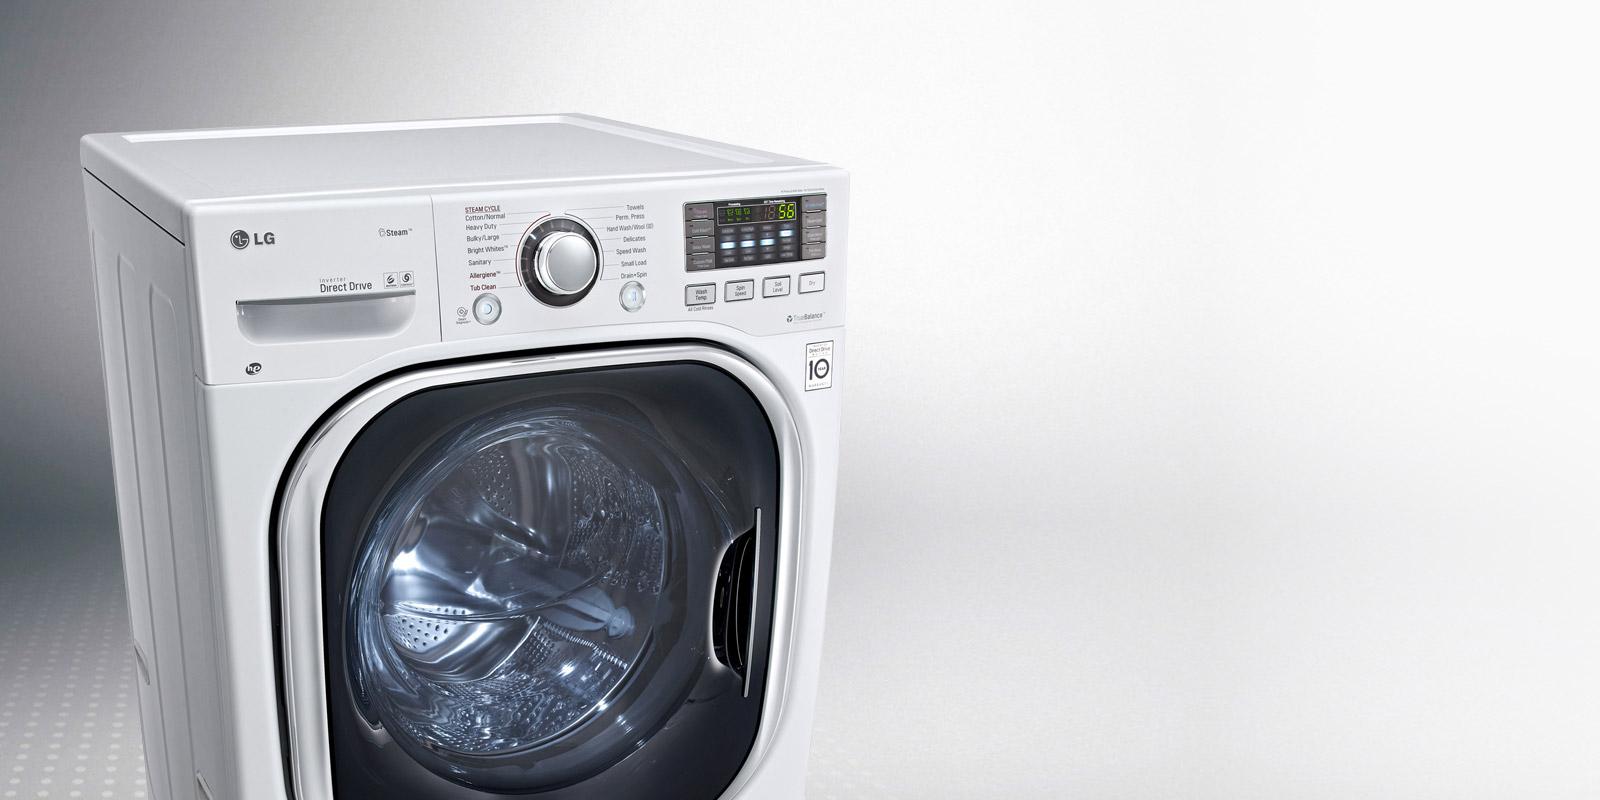 LG Washer Dryer Combo AllInOne Laundry LG USA